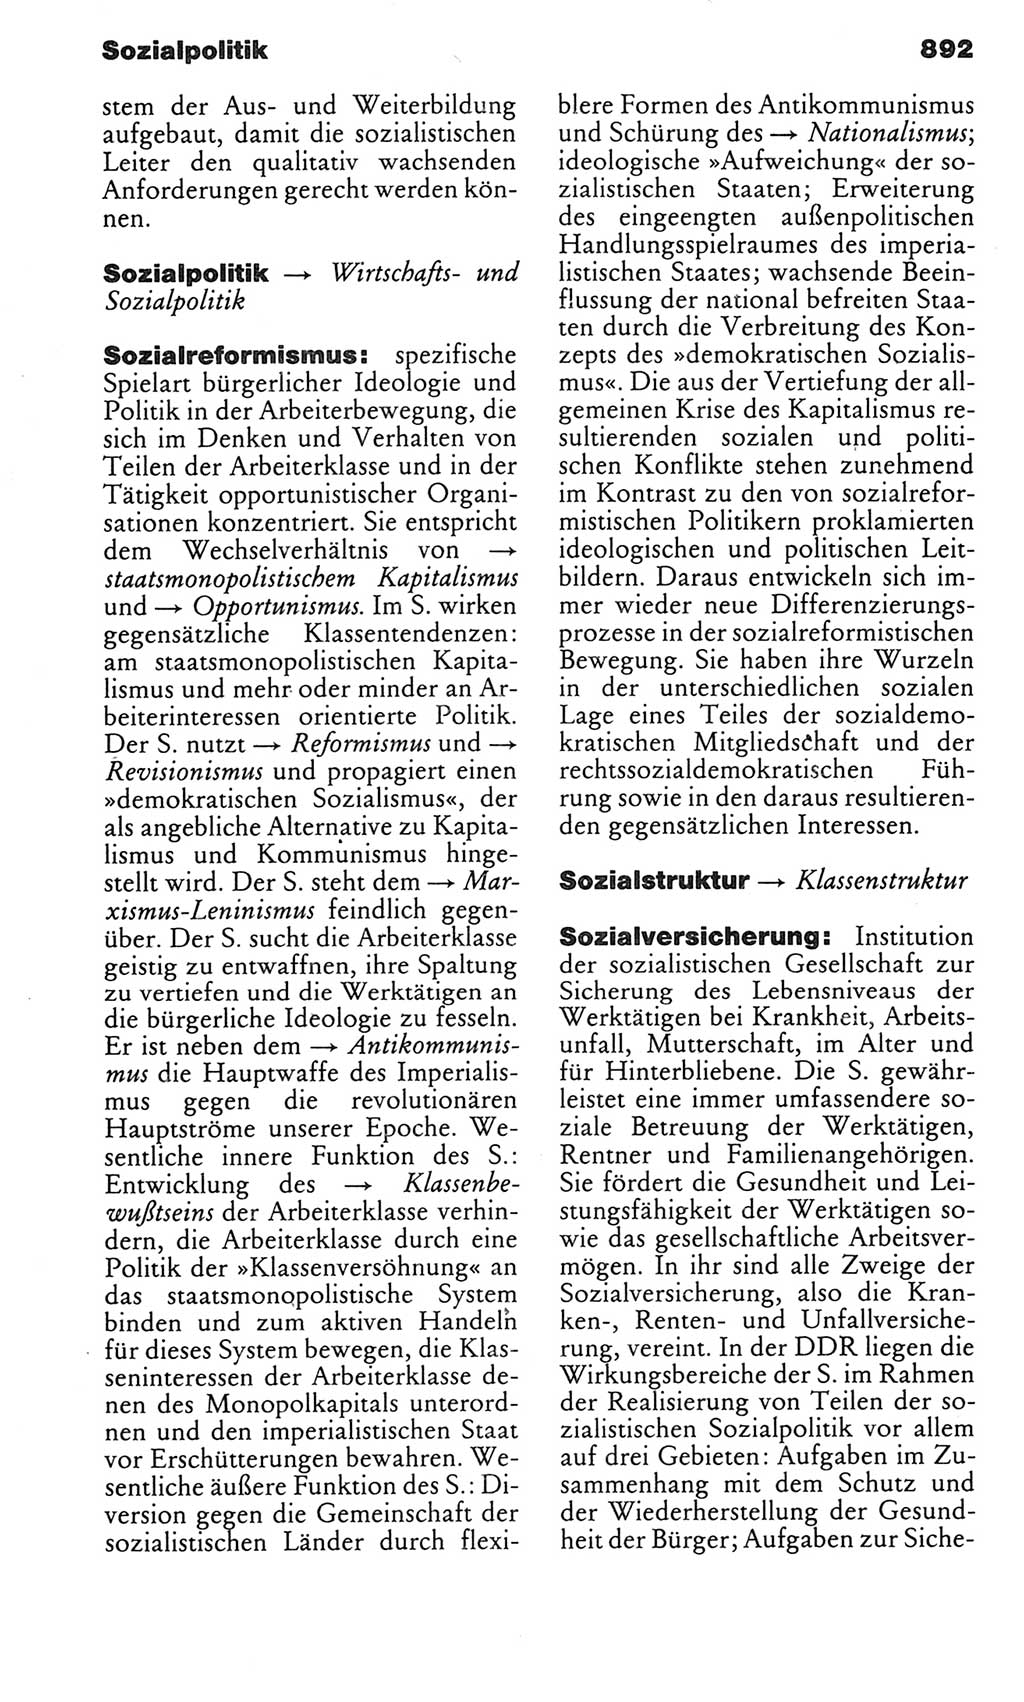 Kleines politisches Wörterbuch [Deutsche Demokratische Republik (DDR)] 1983, Seite 892 (Kl. pol. Wb. DDR 1983, S. 892)